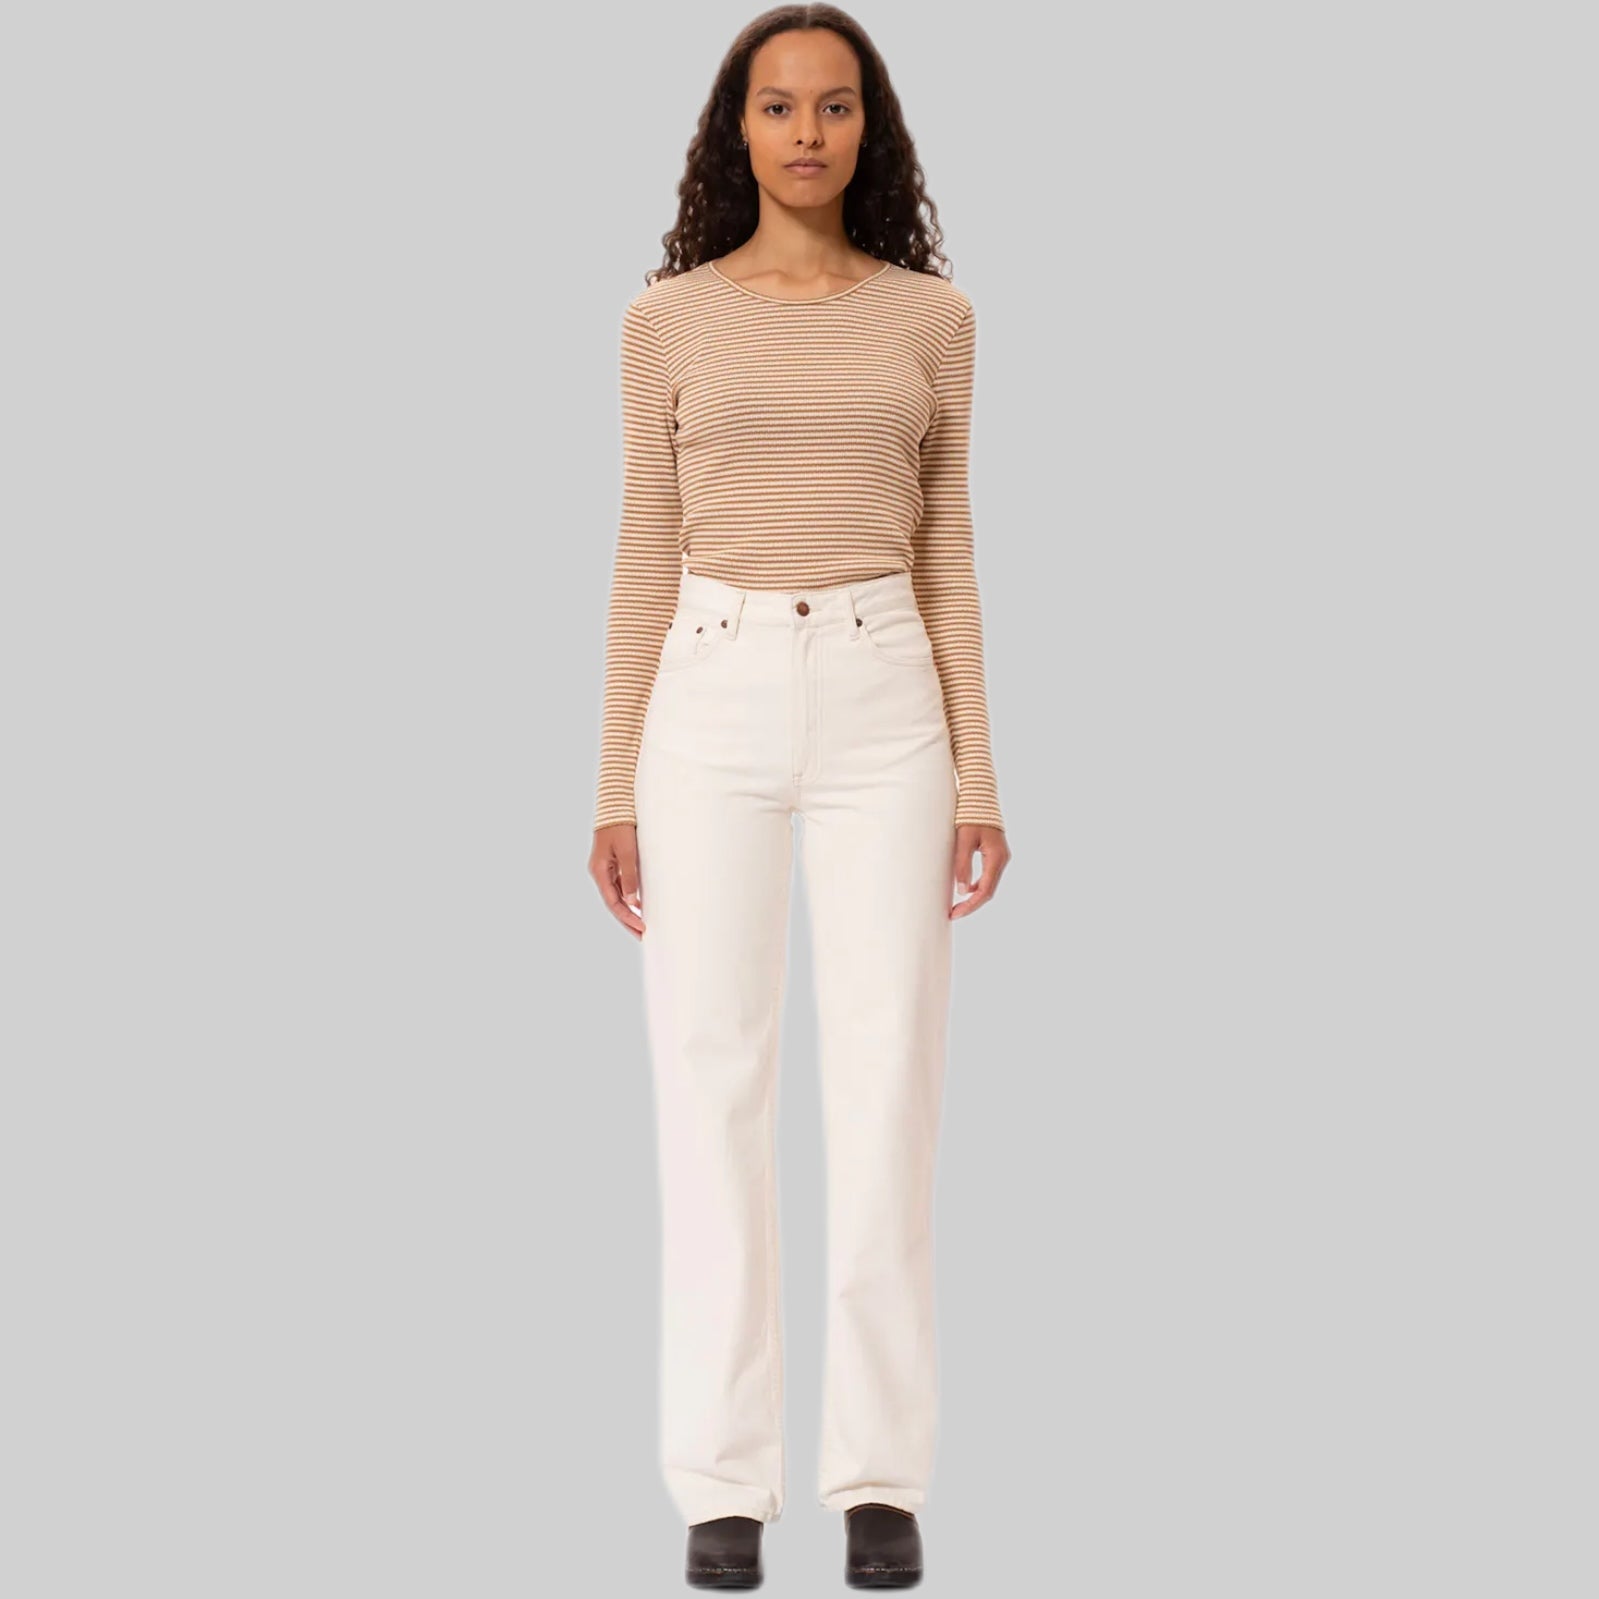 Nudiejeans jeans, white, frontside, women, model